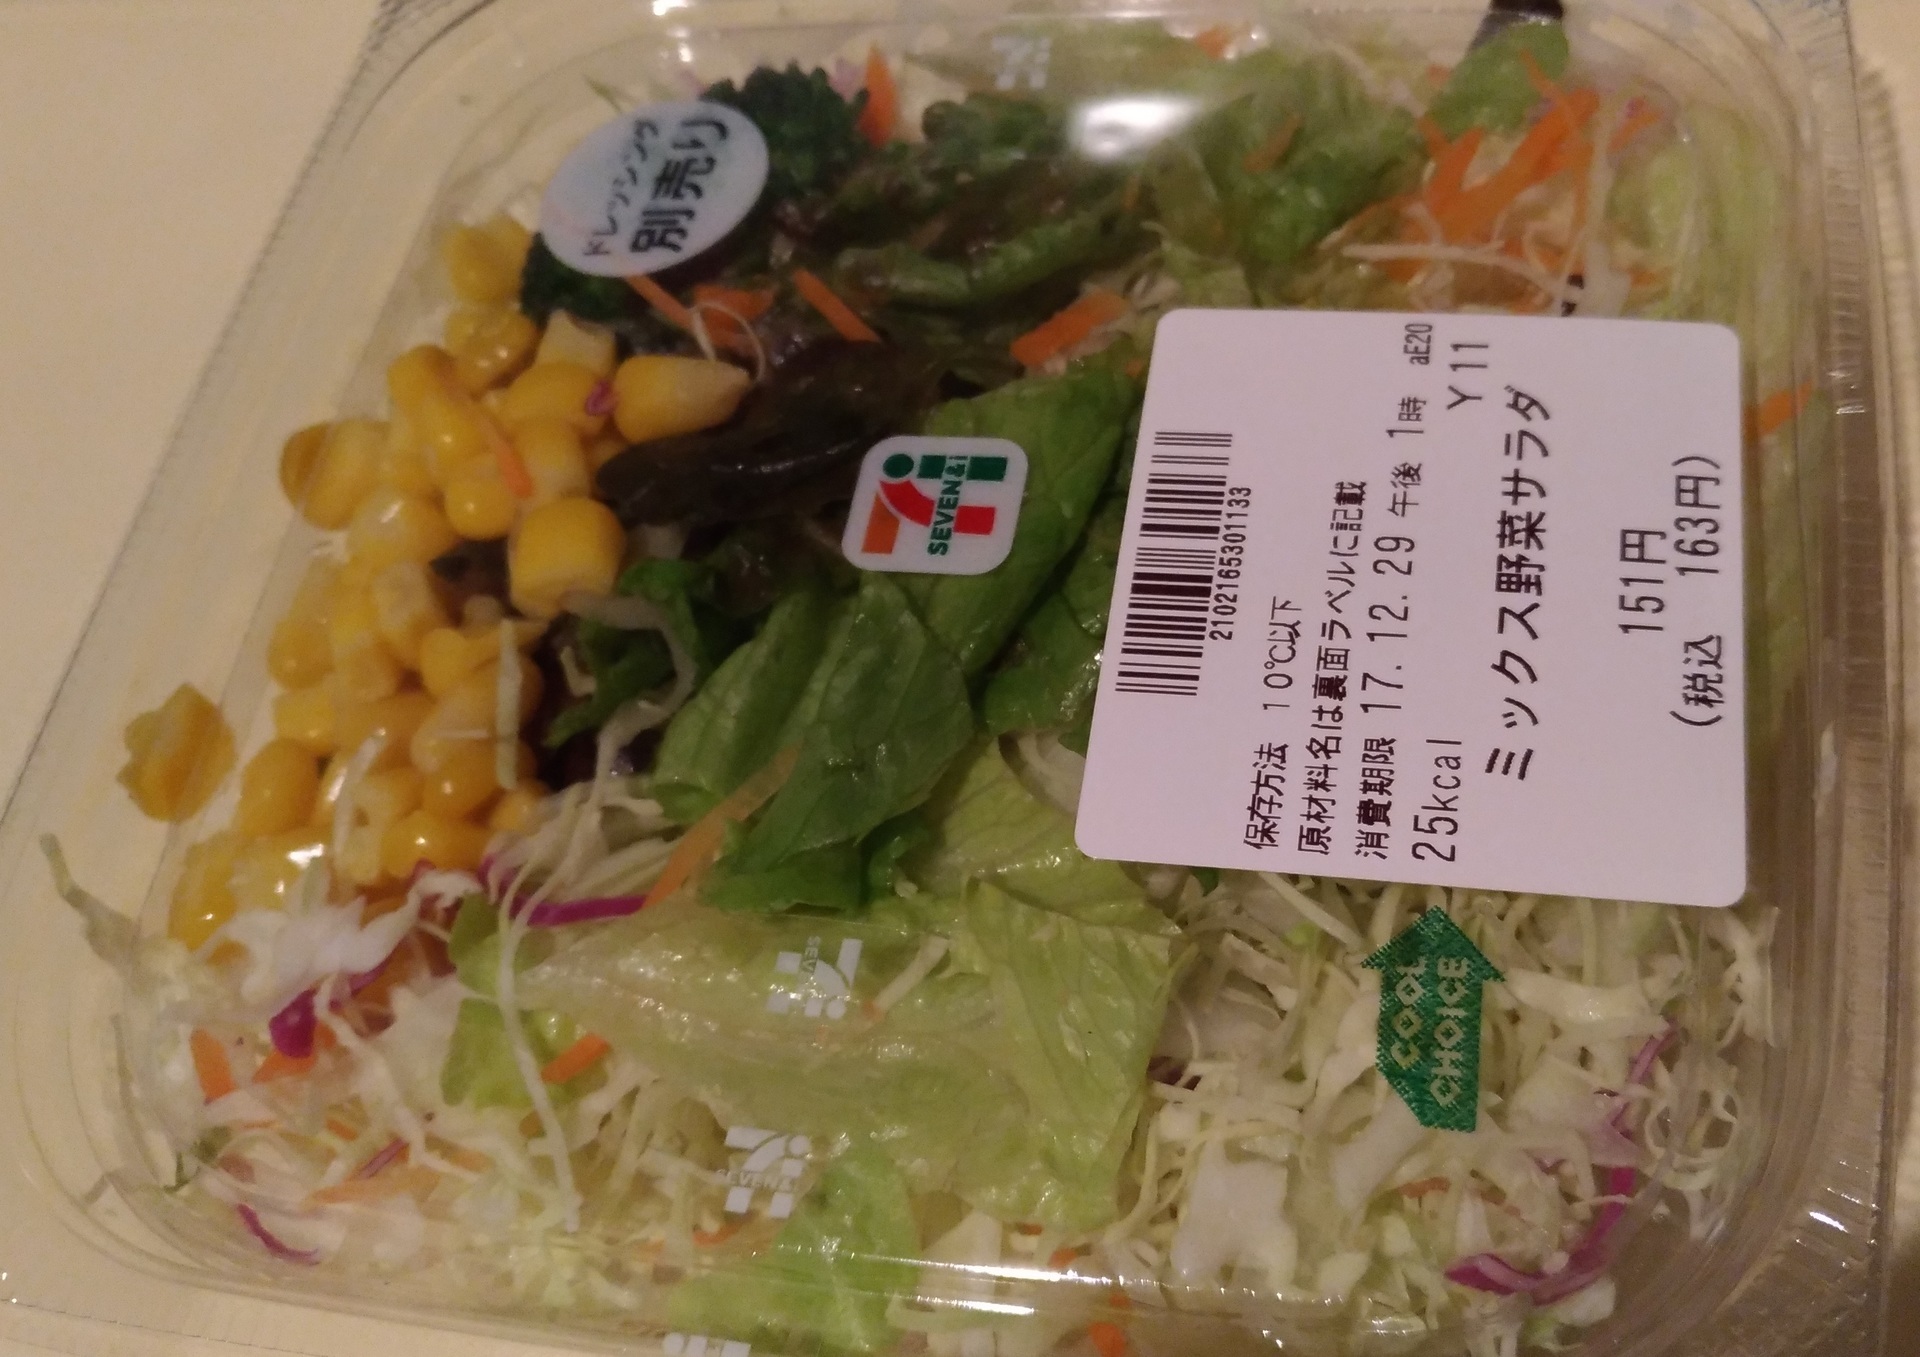 ミックス野菜サラダ セブンイレブンのカップサラダ 定番の形 セブンイレブン 大阪おにぎり100円セールブログ新作メニュー